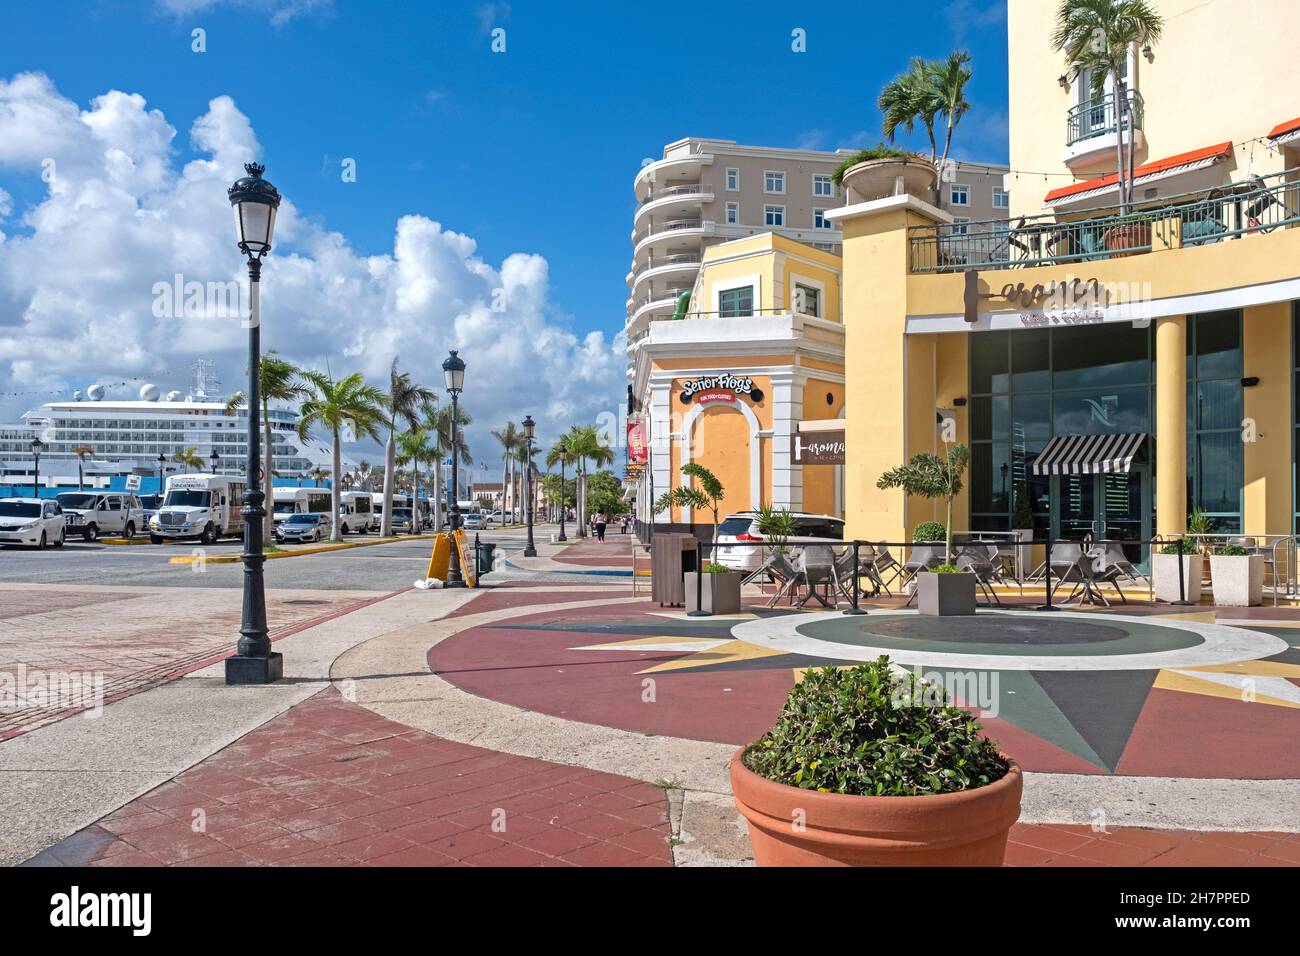 Boulevard dans le Vieux San Juan / Viejo San Juan, quartier colonial historique dans la capitale San Juan, Porto Rico, grandes Antilles, Caraïbes Banque D'Images